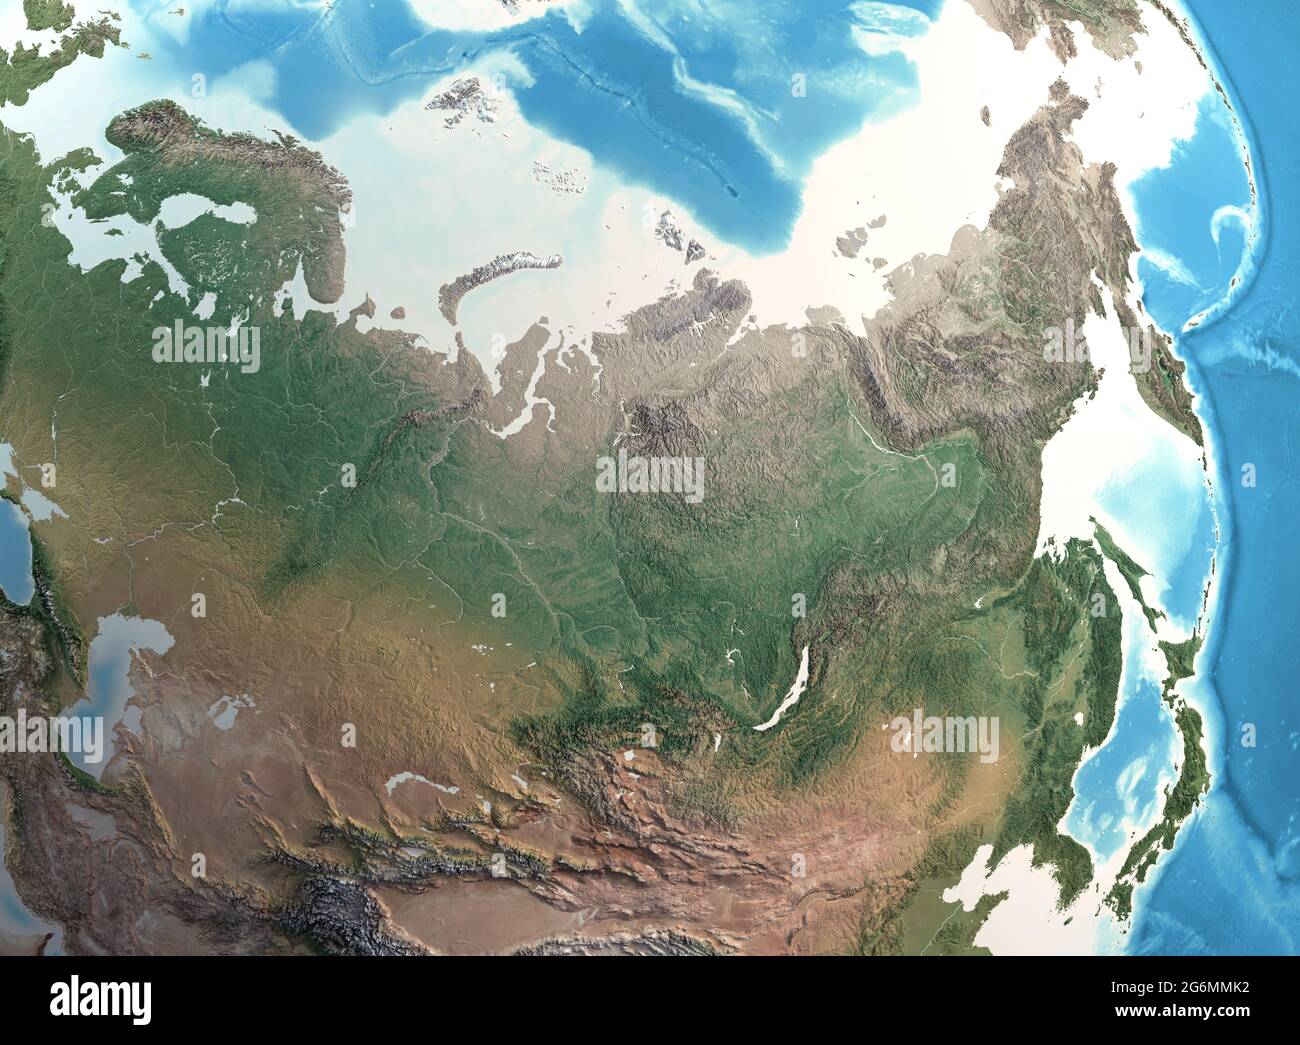 Carte physique de l'Asie du Nord, de la Sibérie et de la Russie, avec des détails à haute résolution. Vue satellite de la planète Terre - éléments fournis par la NASA Banque D'Images